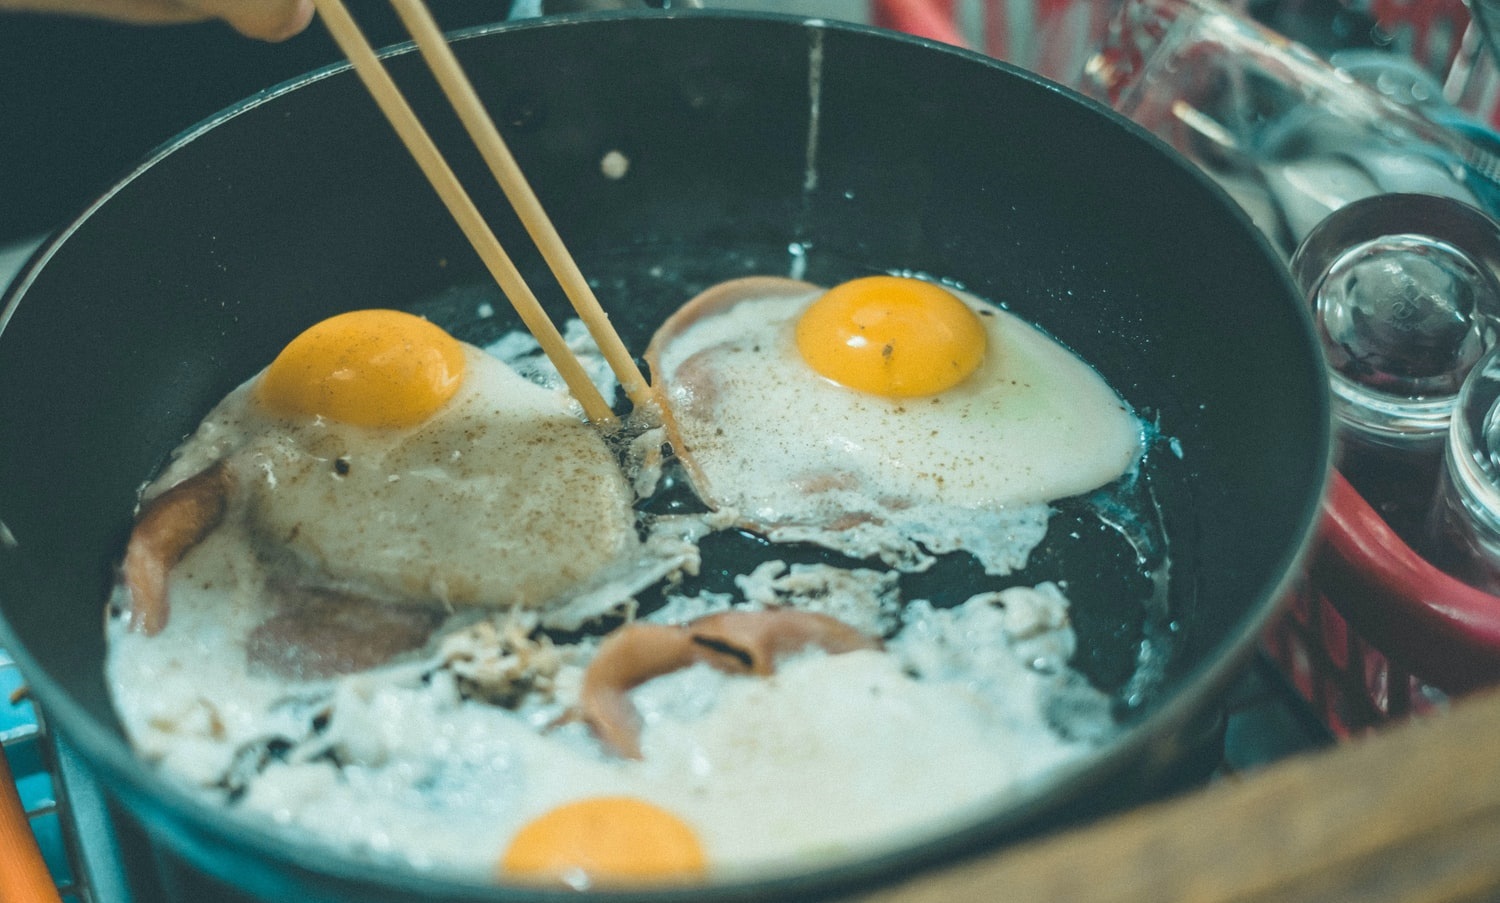 سرخ کردن تخم مرغ - جلوگیری از پاشیدن روغن